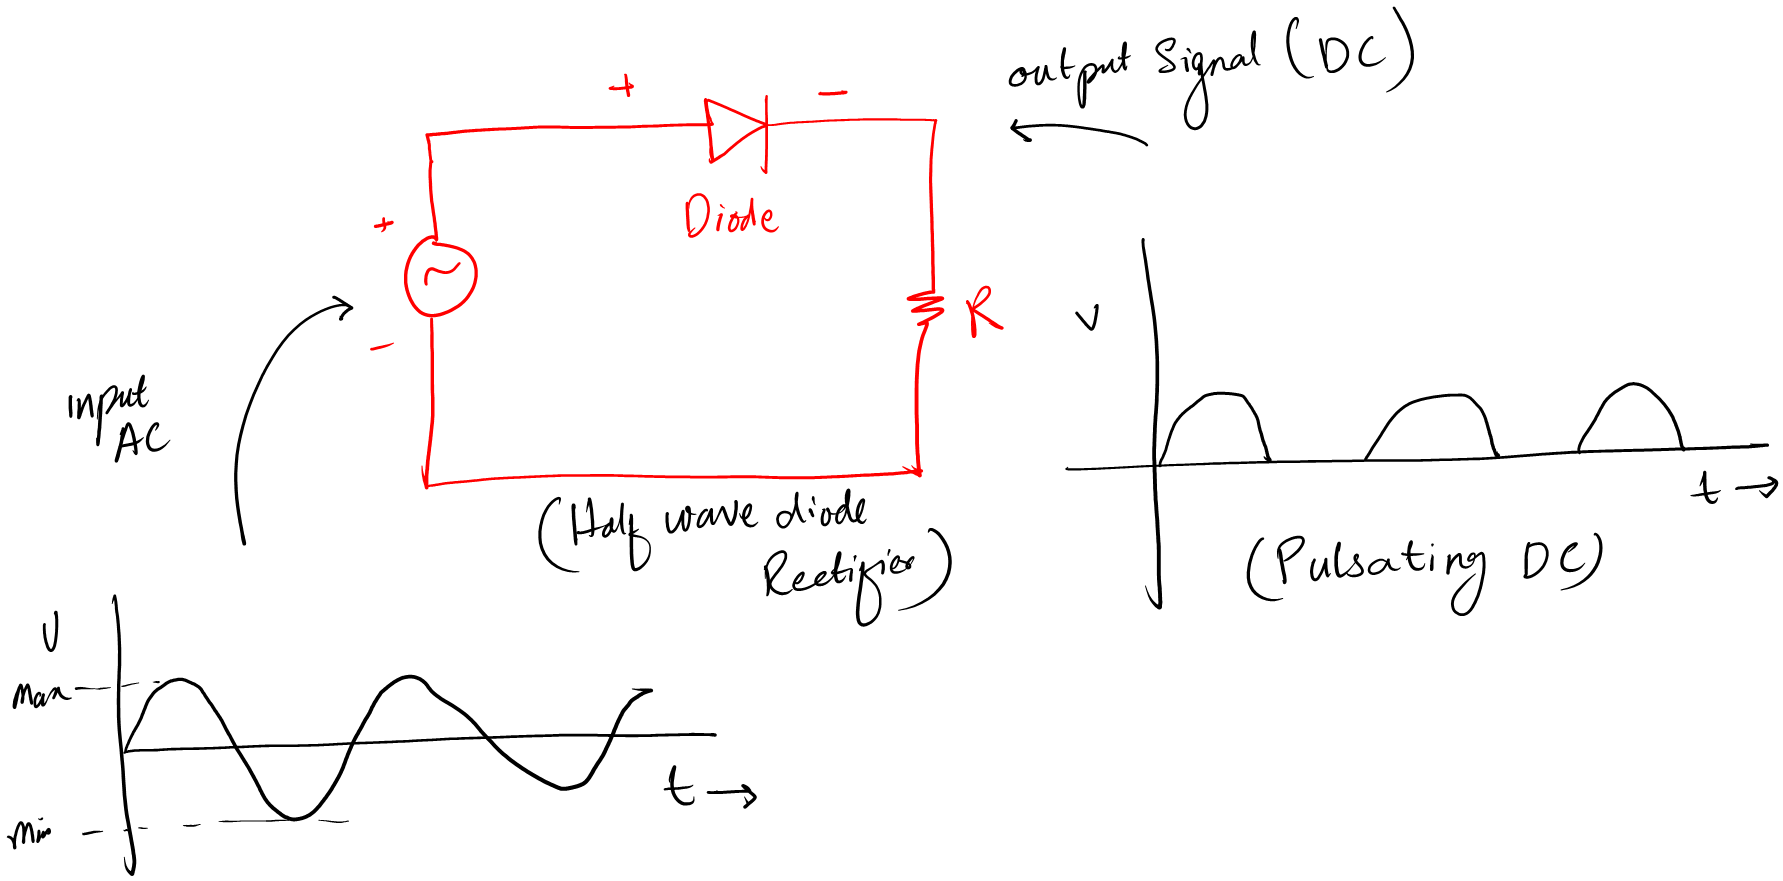 Half wave rectifier circuit